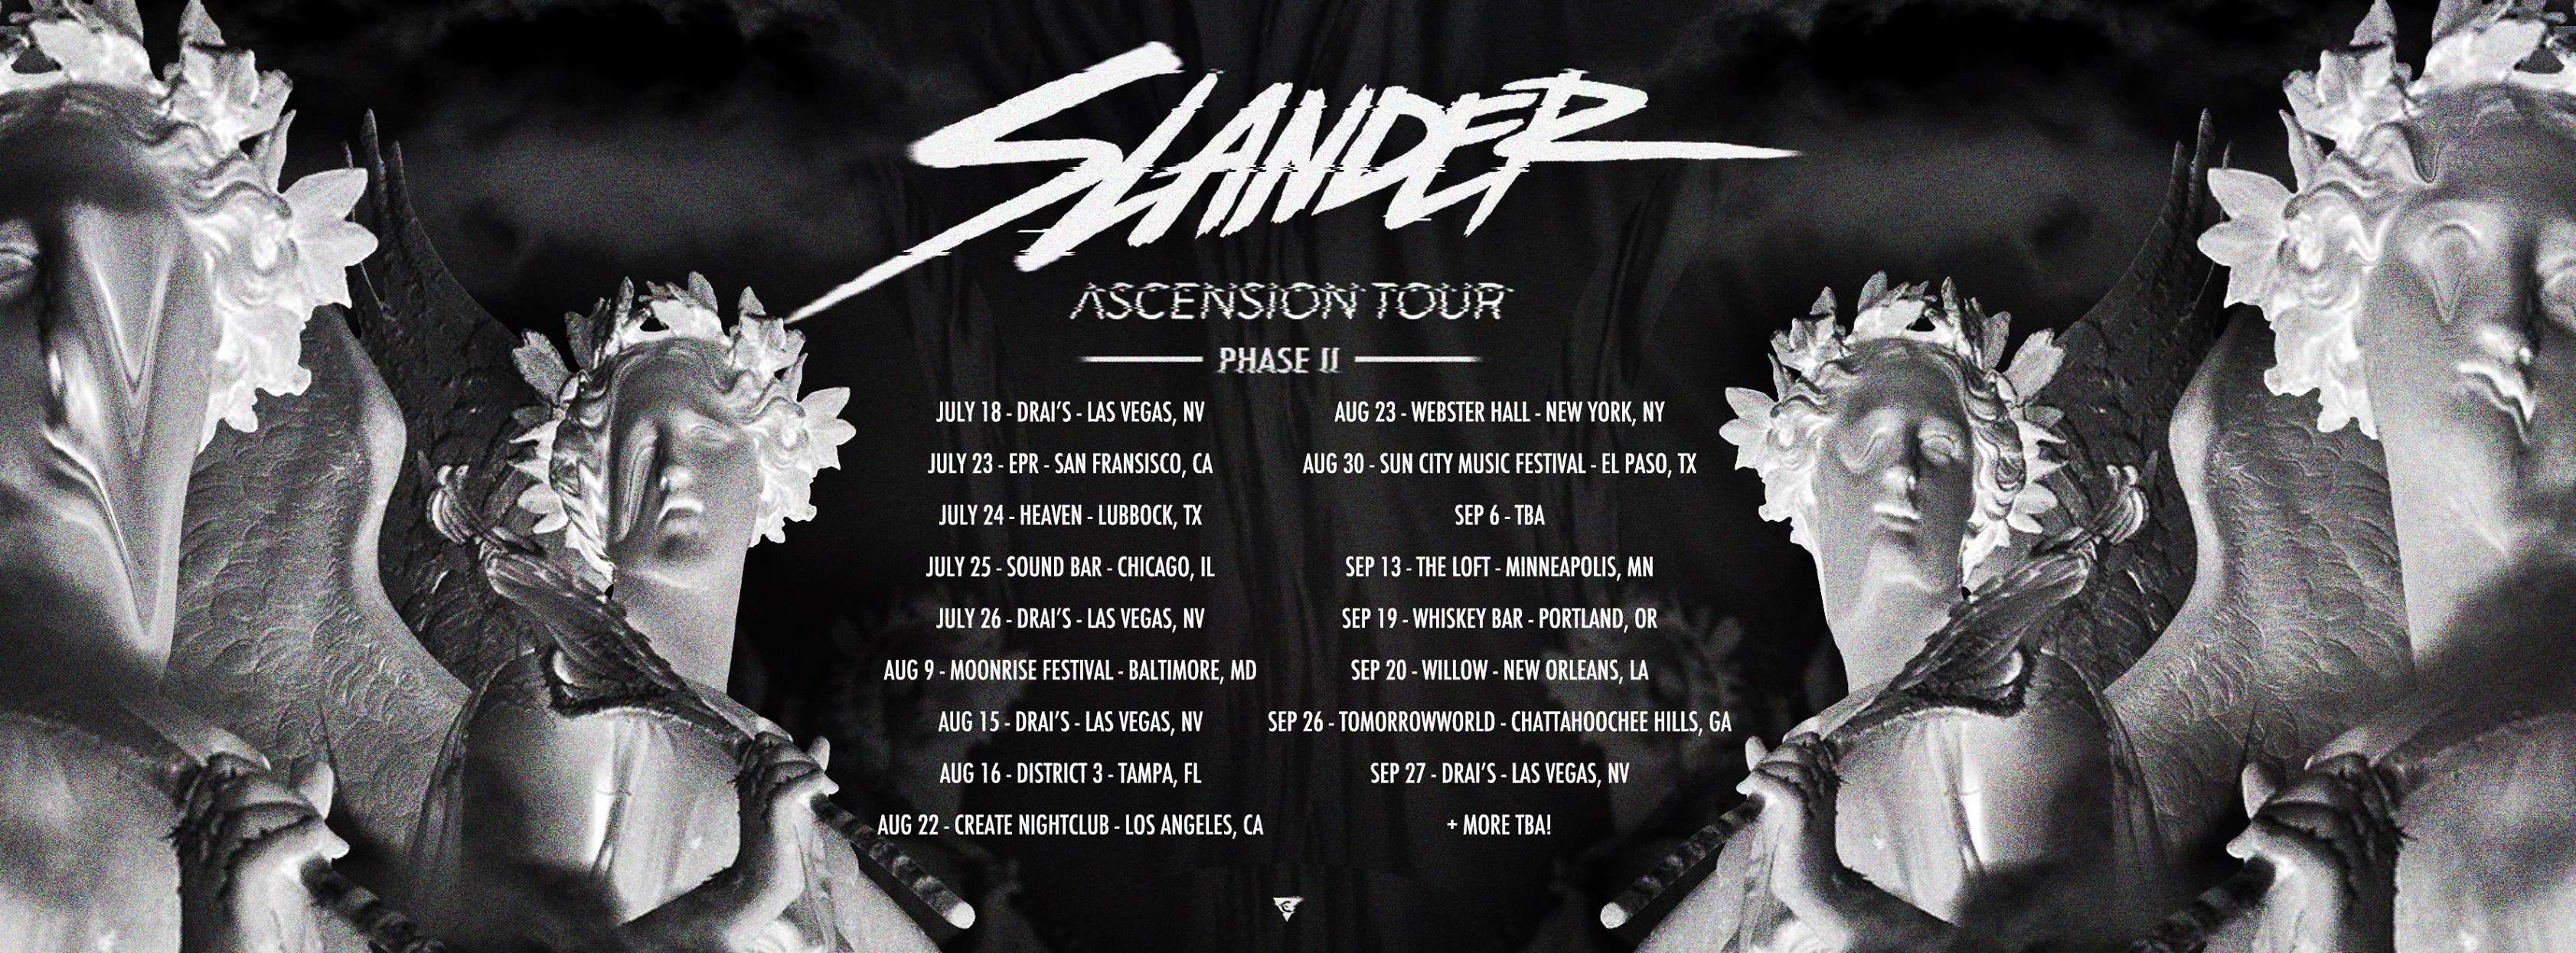 slander tour